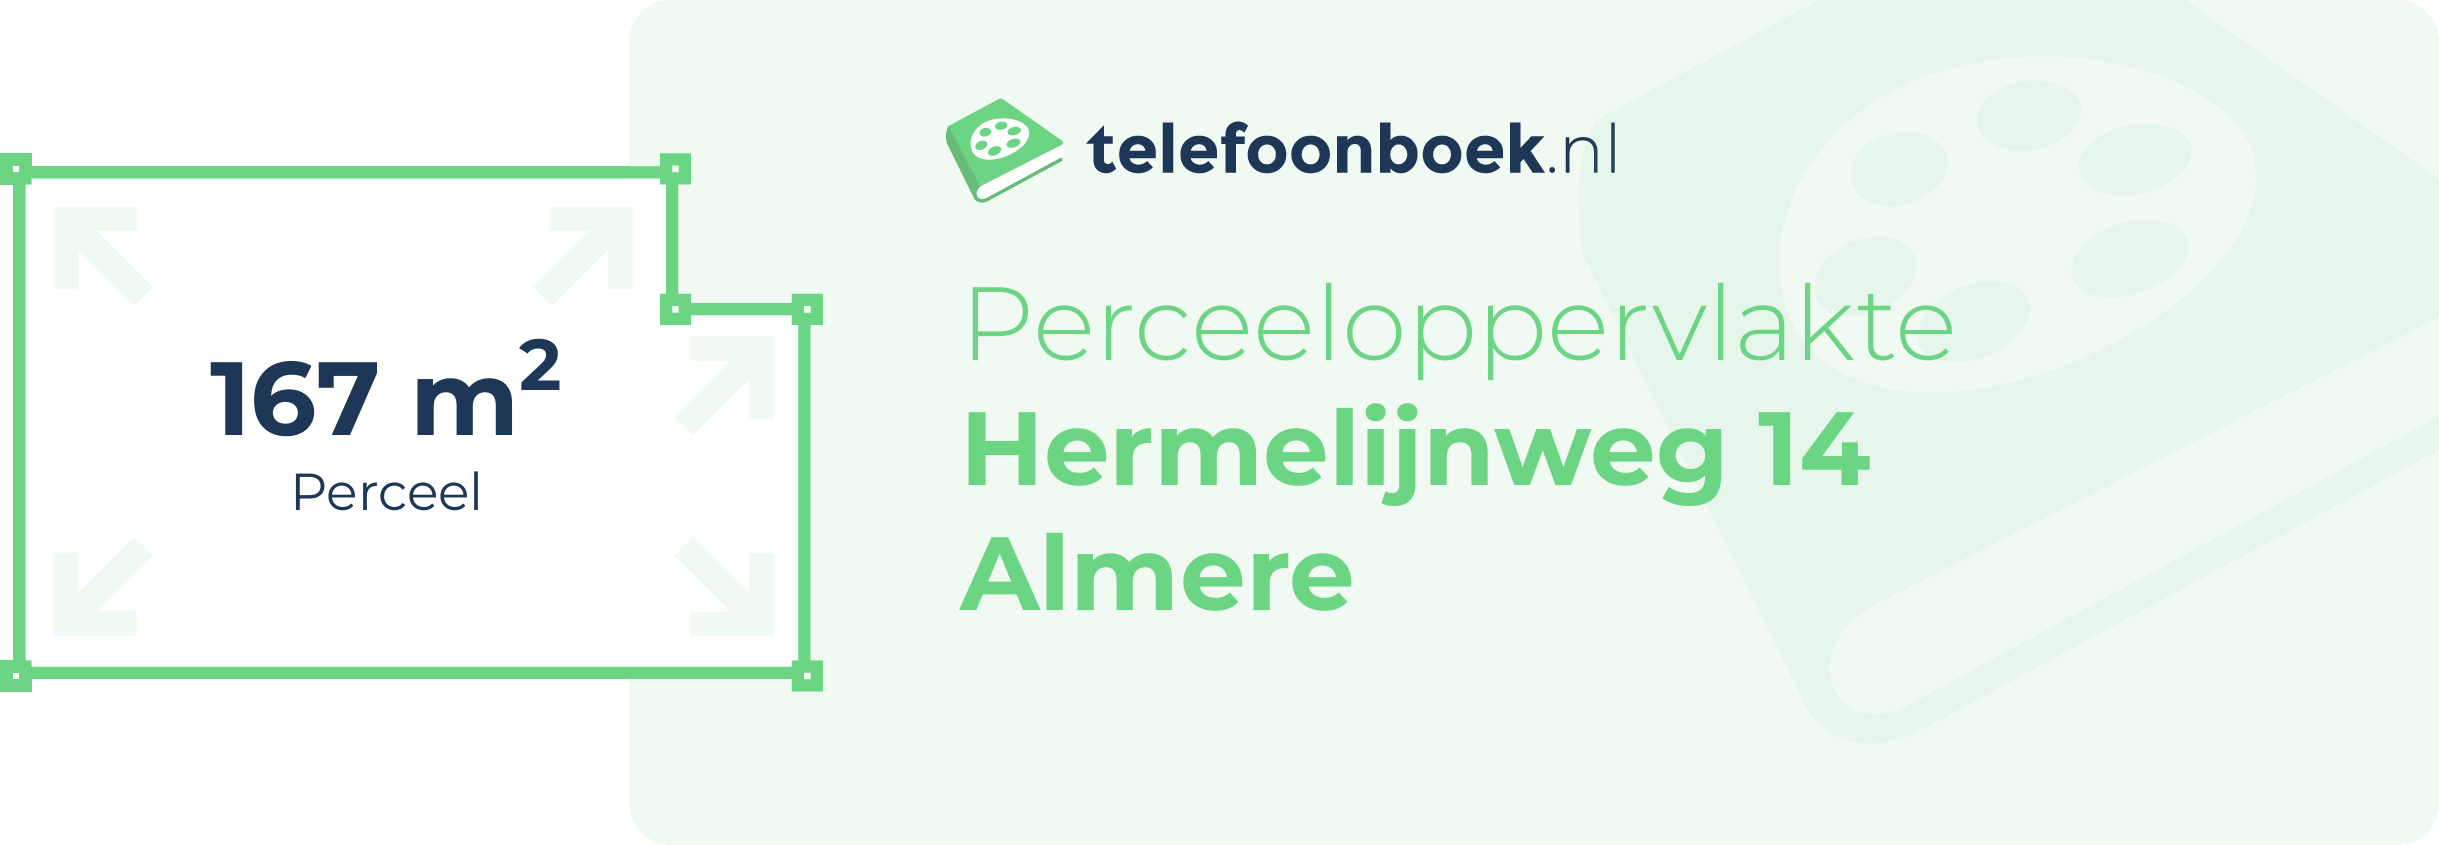 Perceeloppervlakte Hermelijnweg 14 Almere